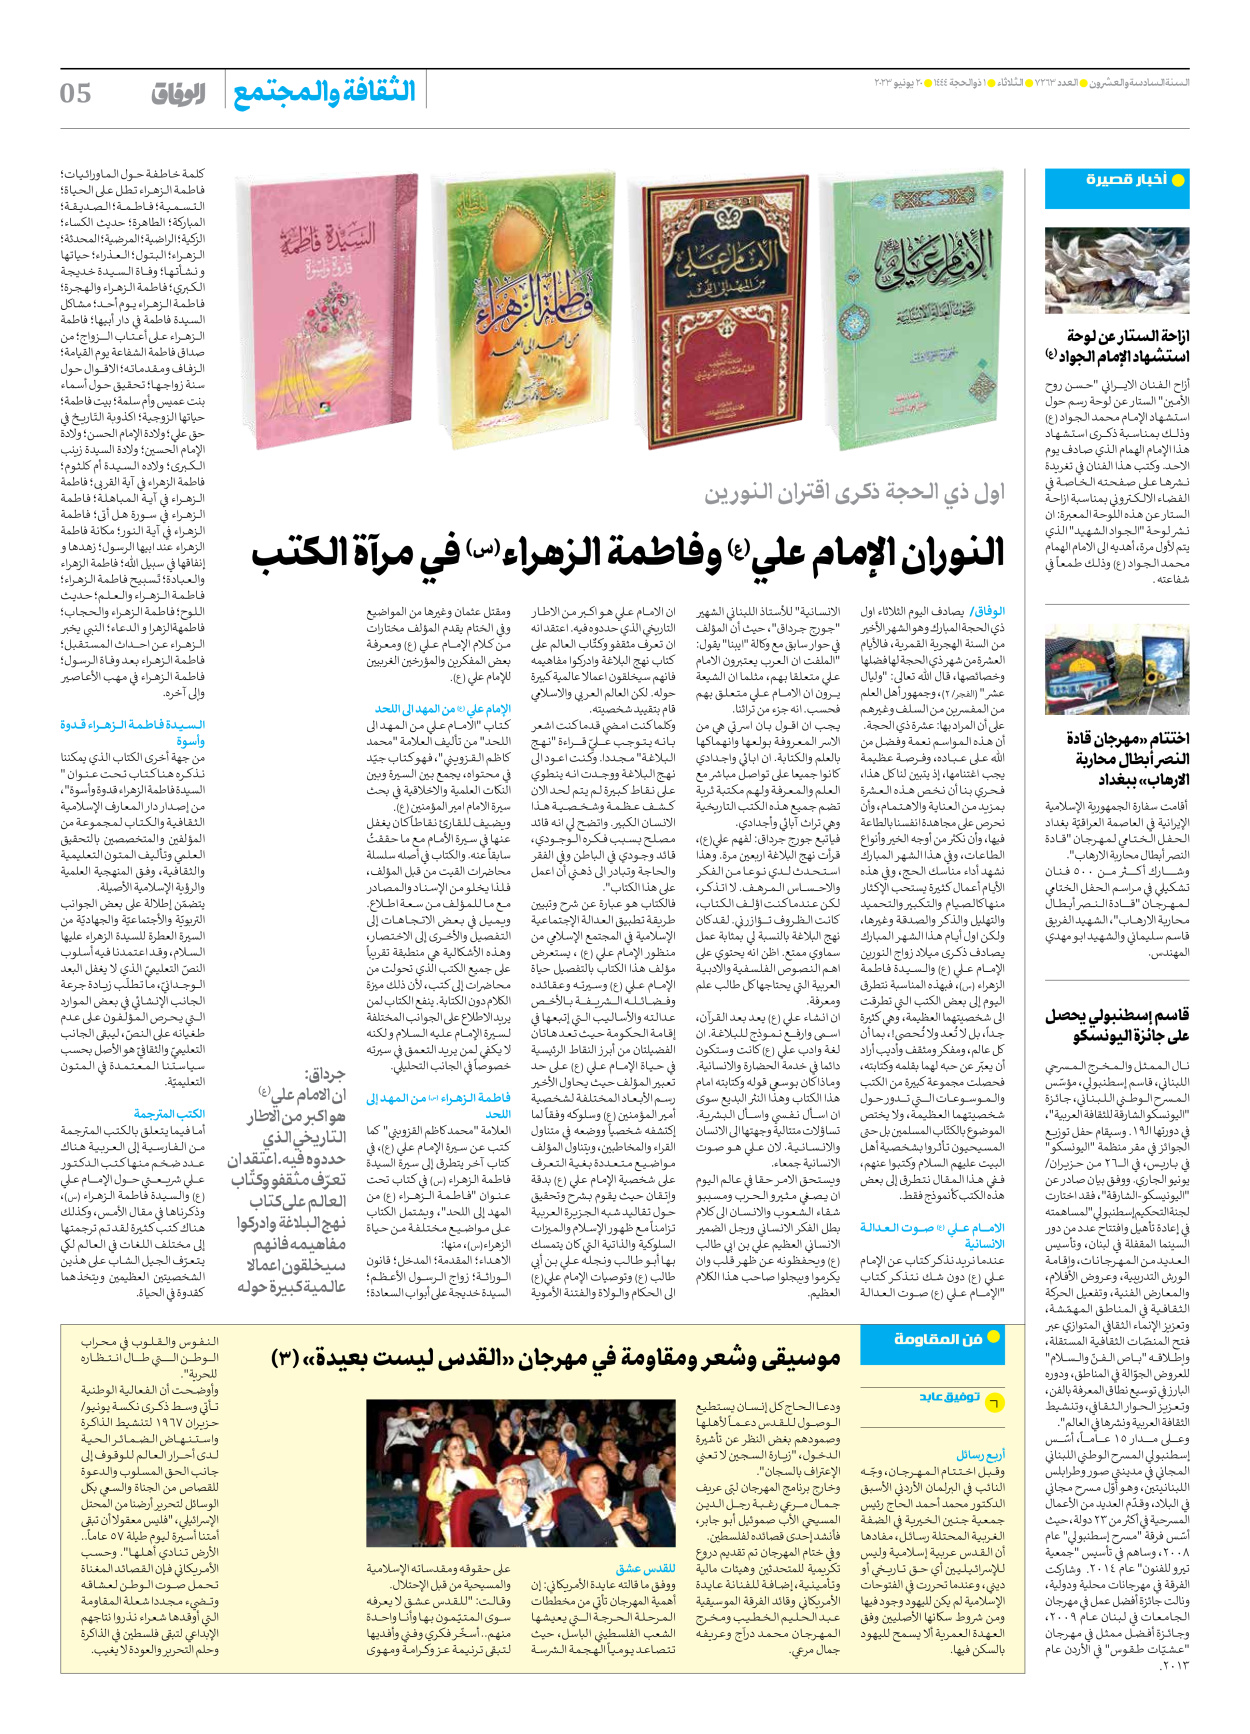 صحیفة ایران الدولیة الوفاق - العدد سبعة آلاف ومائتان وثلاثة وستون - ٢٠ يونيو ٢٠٢٣ - الصفحة ٥